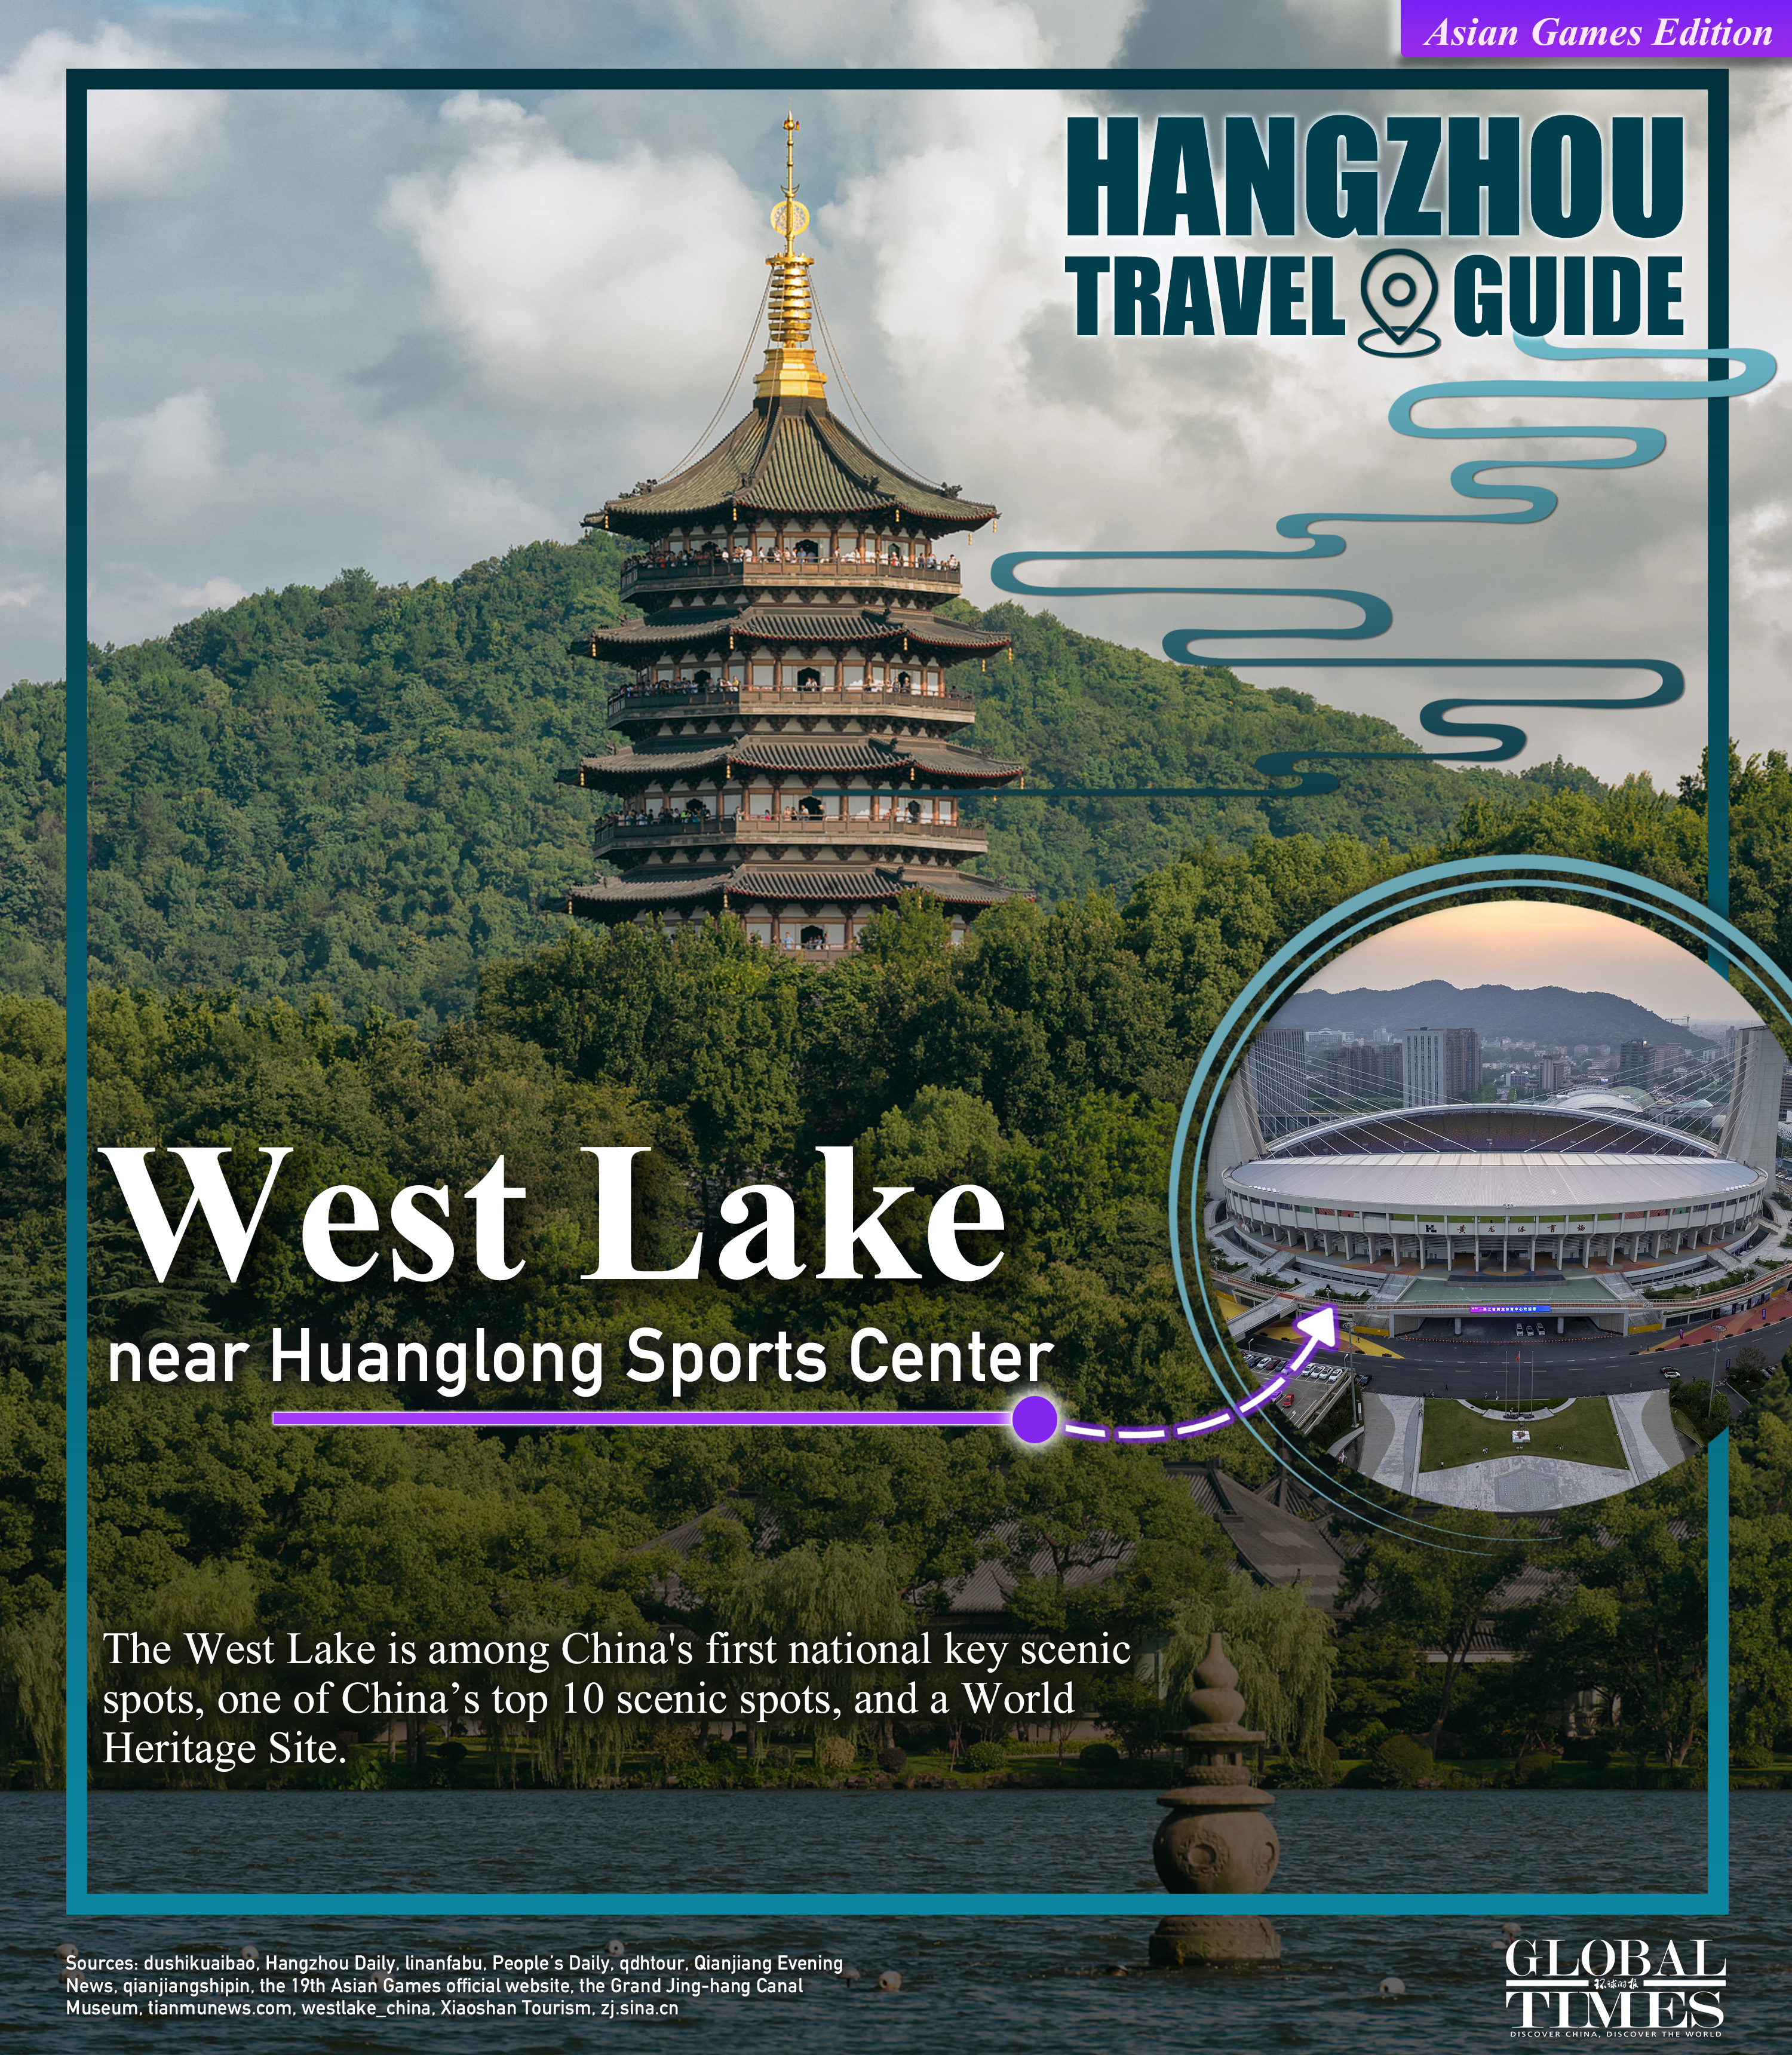 Hangzhou travel guide: Asian Games edition